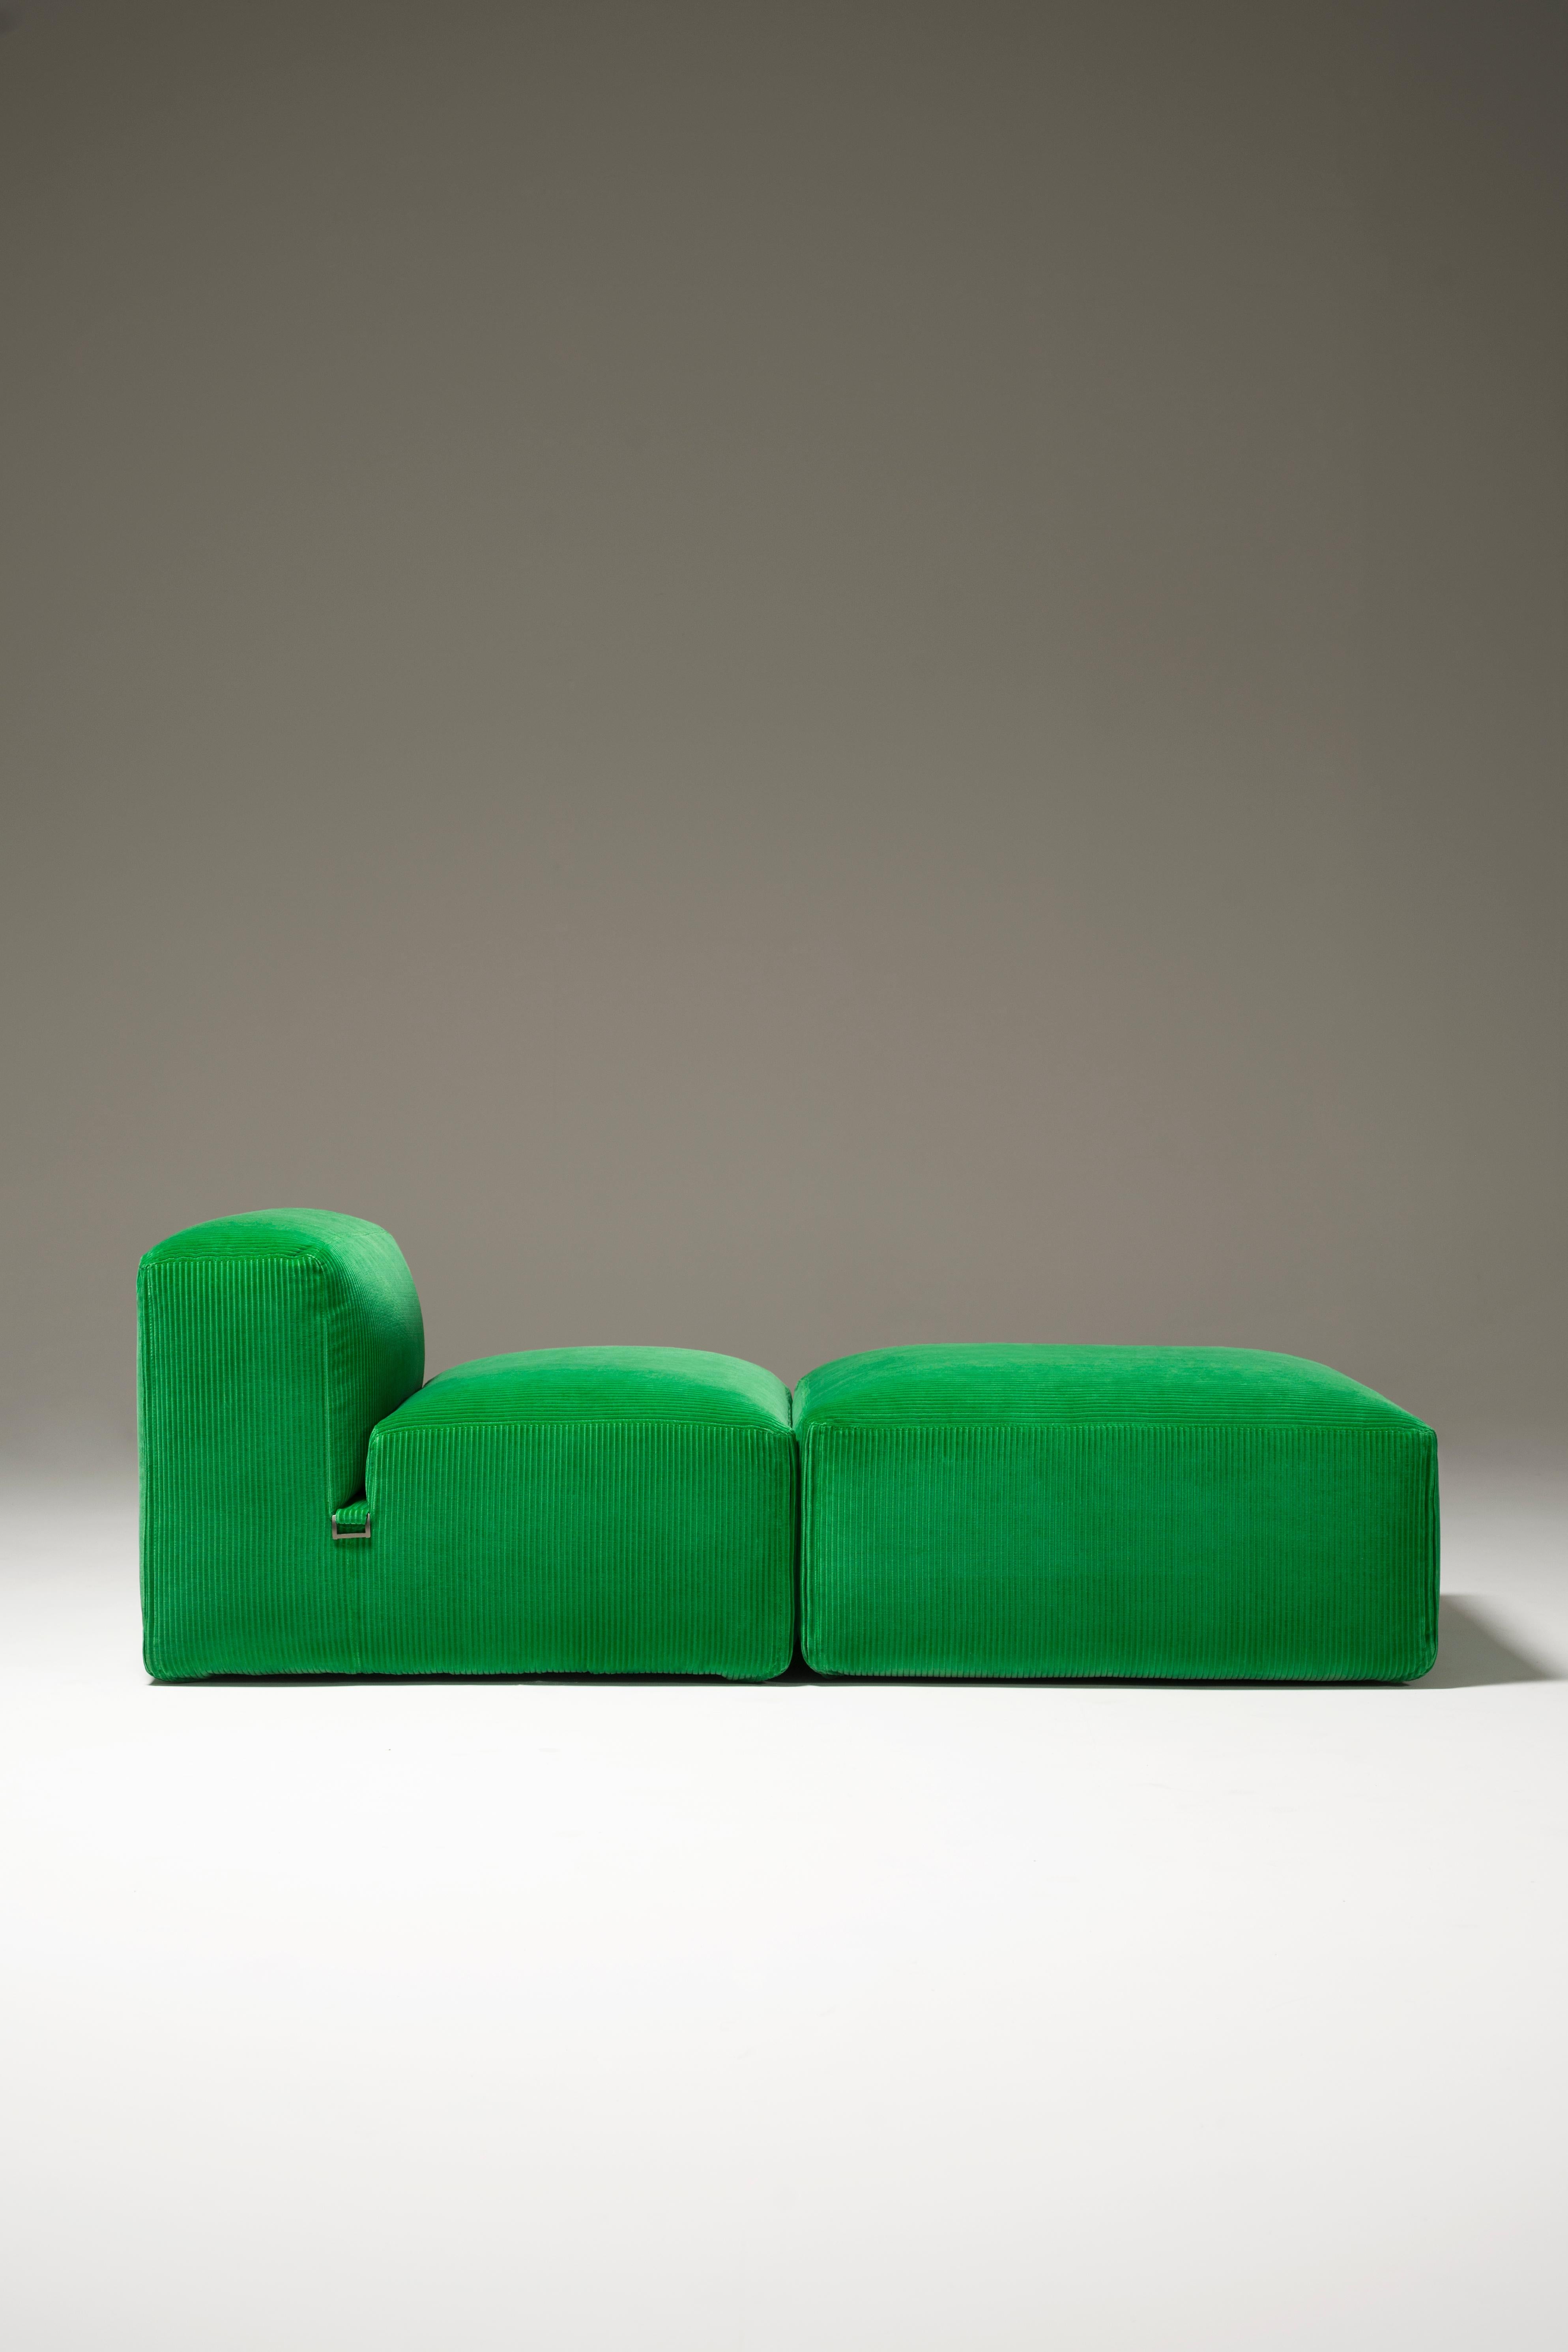 Tacchini Le Mura Modular Sofa designed by Mario Bellini In New Condition For Sale In Brooklyn, NY